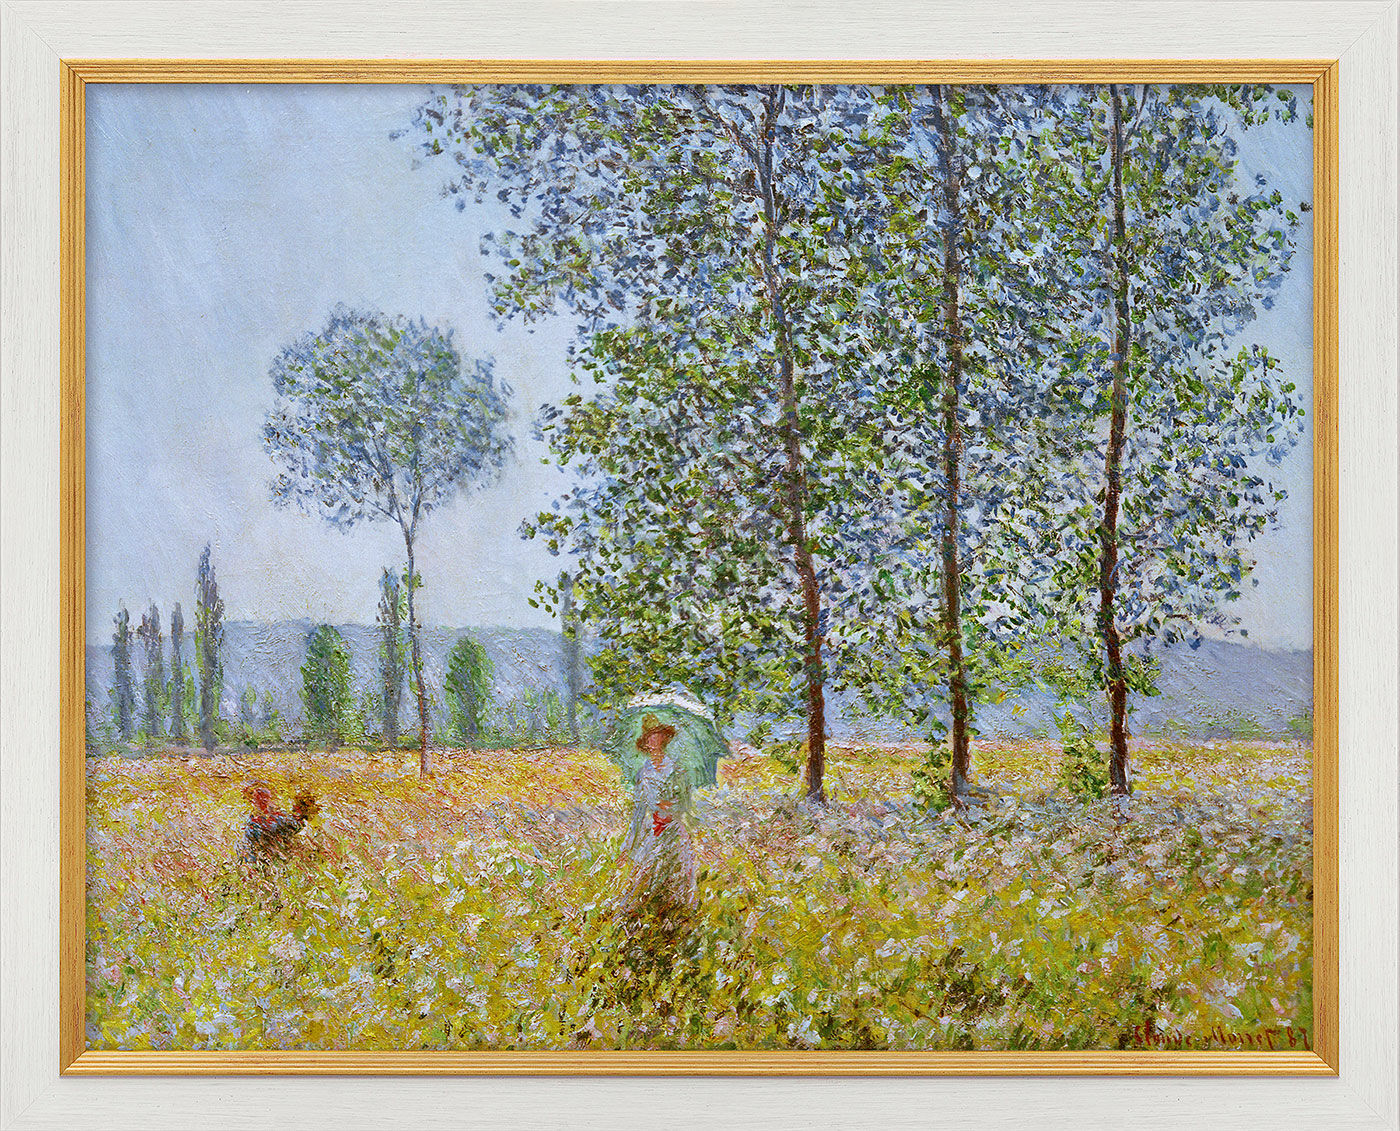 Tableau "Champs au printemps" (1887), encadré von Claude Monet